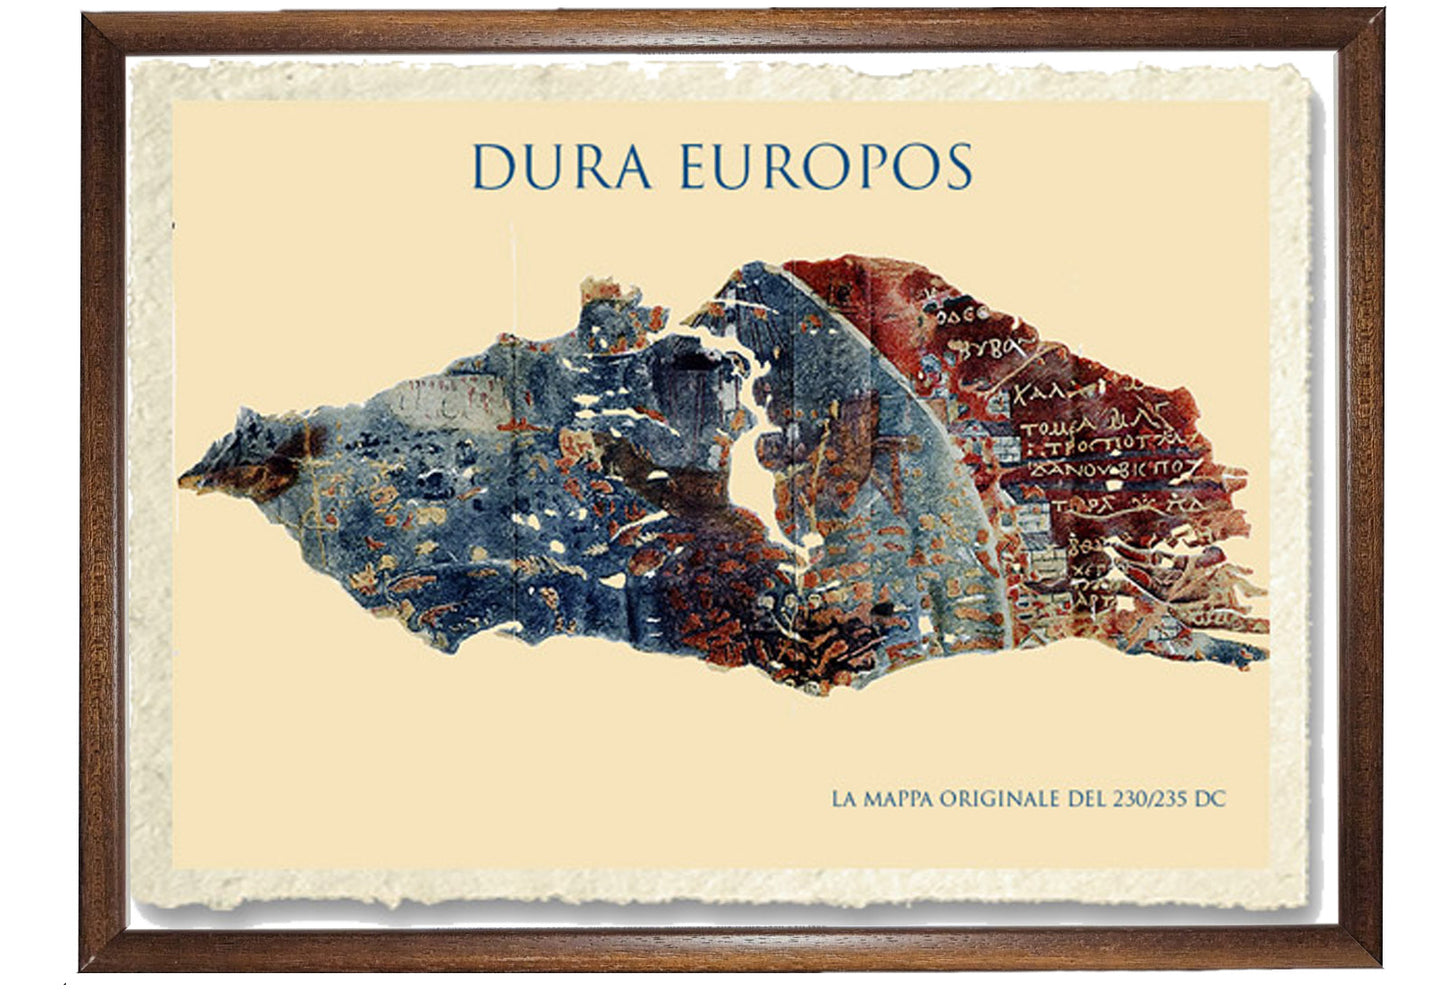 Dura Europos riproduzione mappa originale del 230-235 d.C.